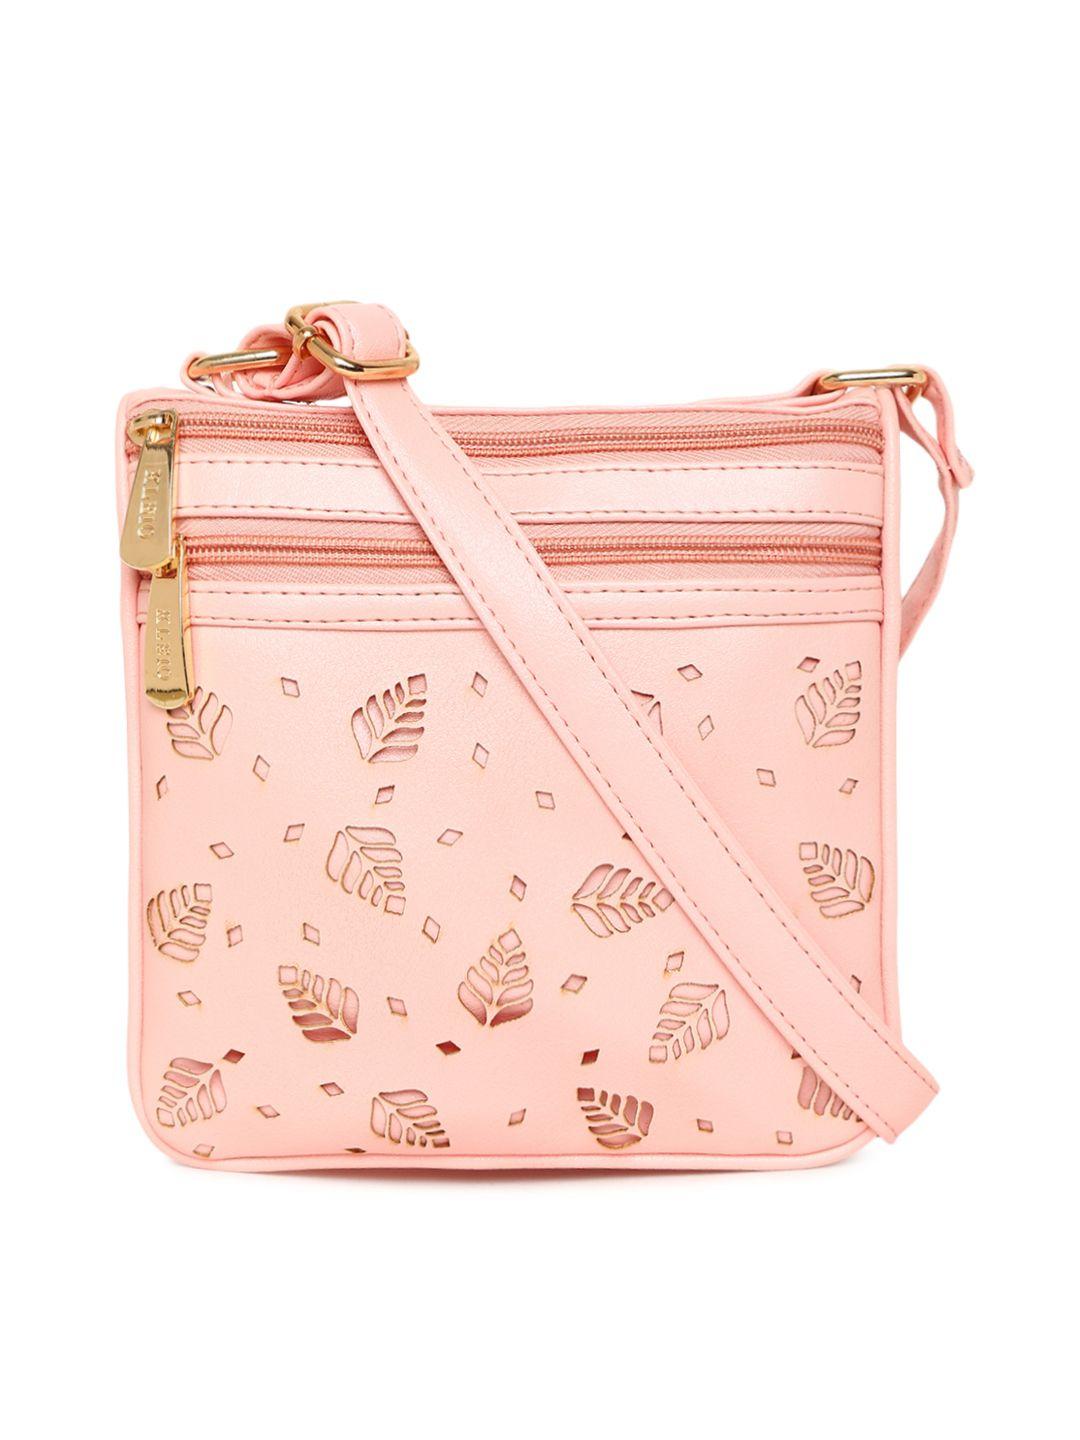 kleio pink textured sling bag